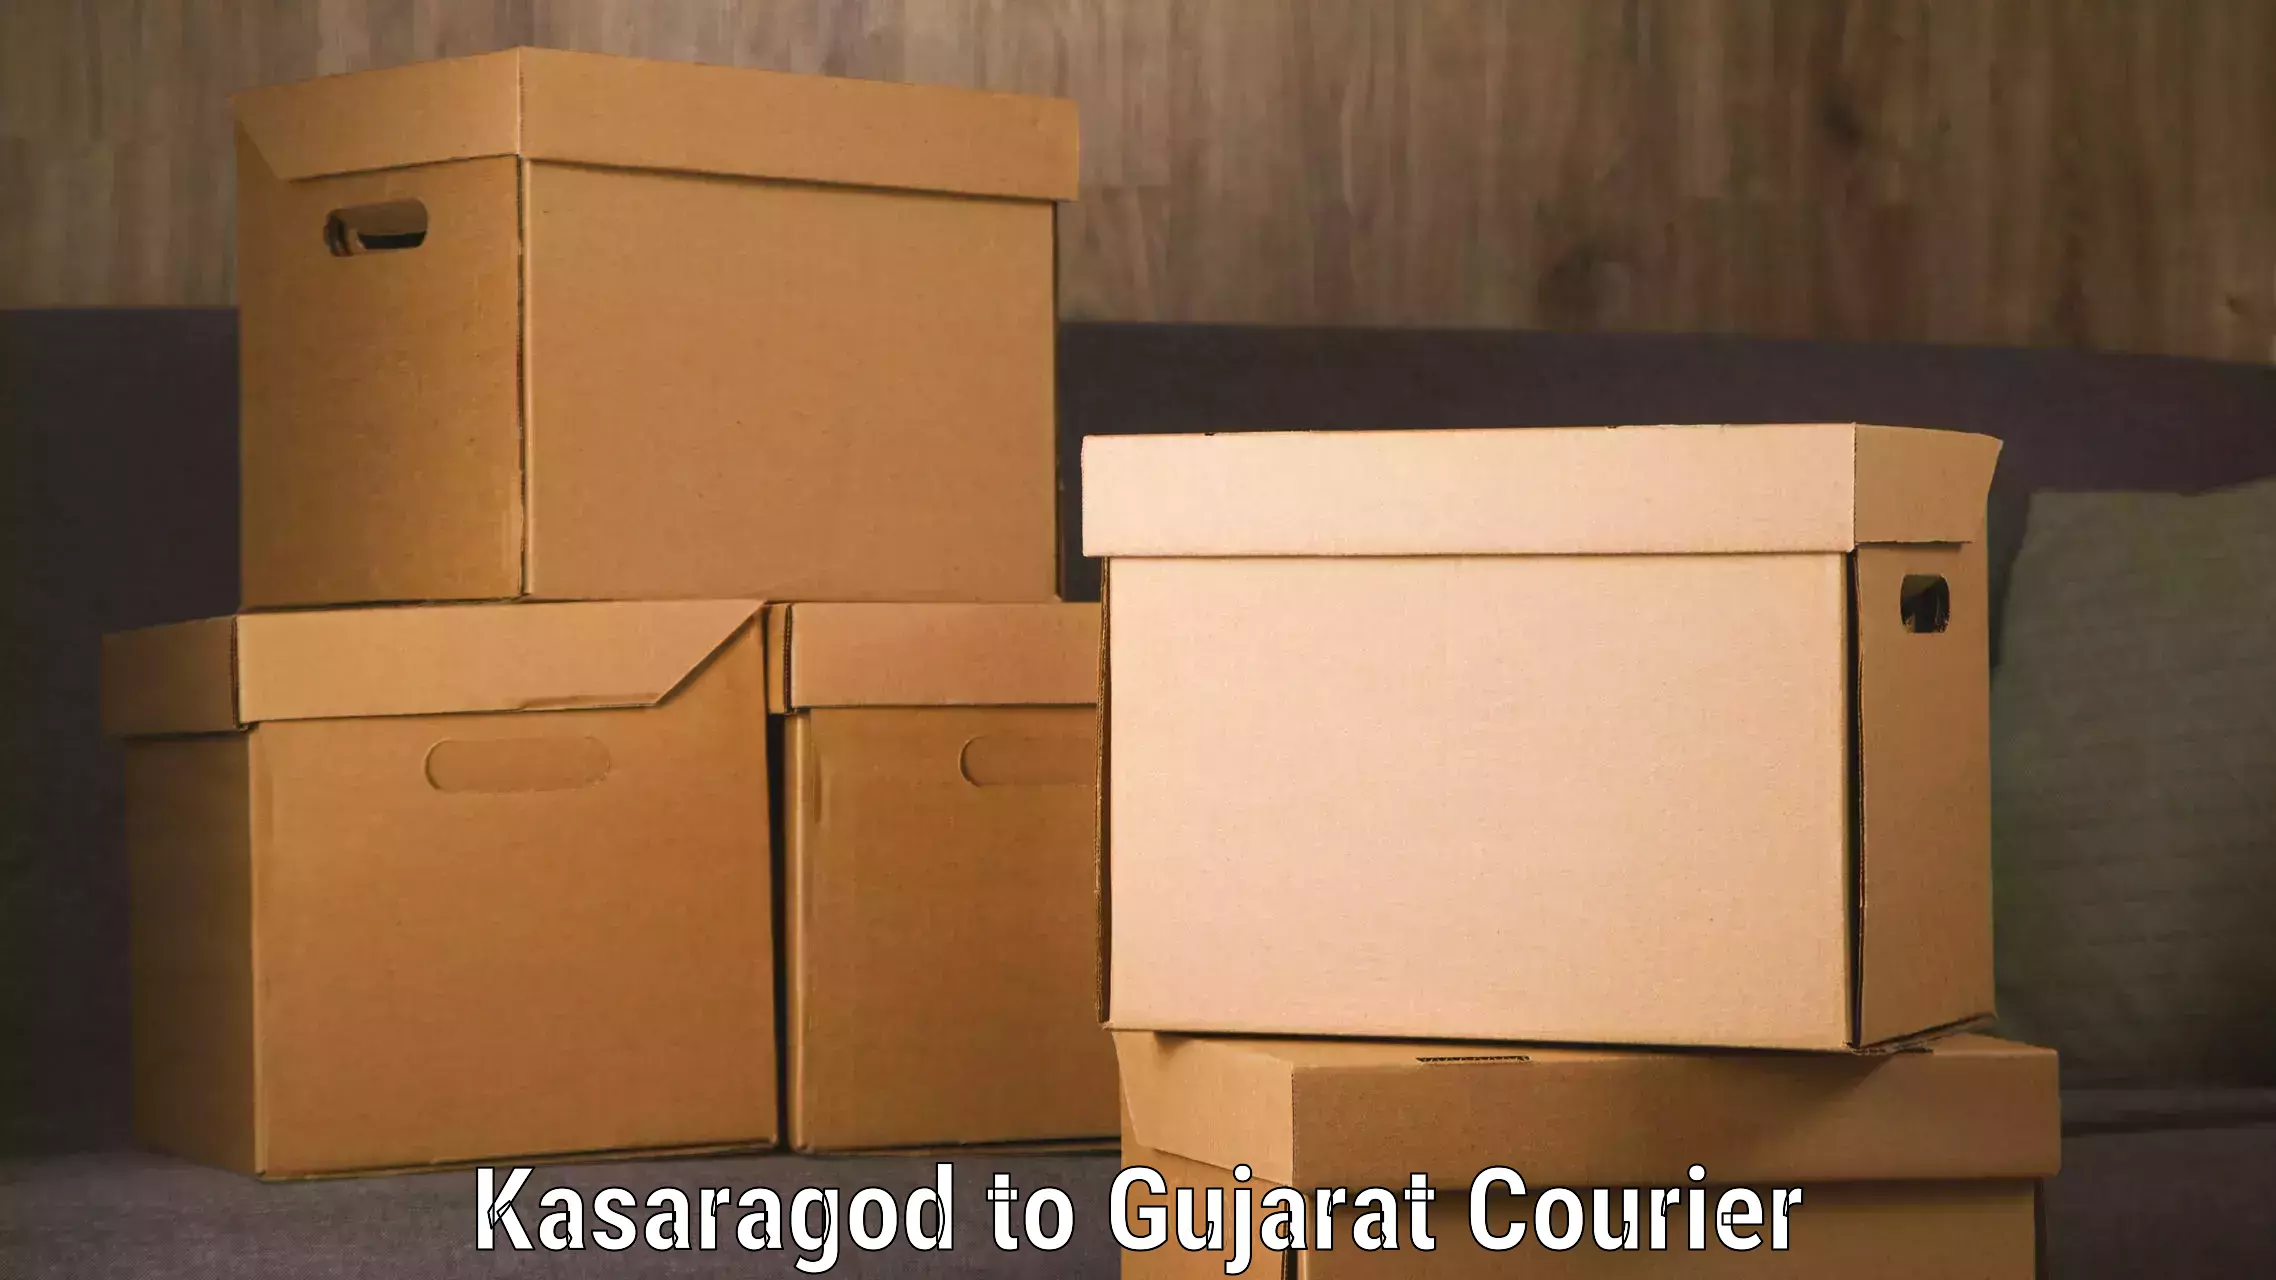 Professional courier handling Kasaragod to Valsad